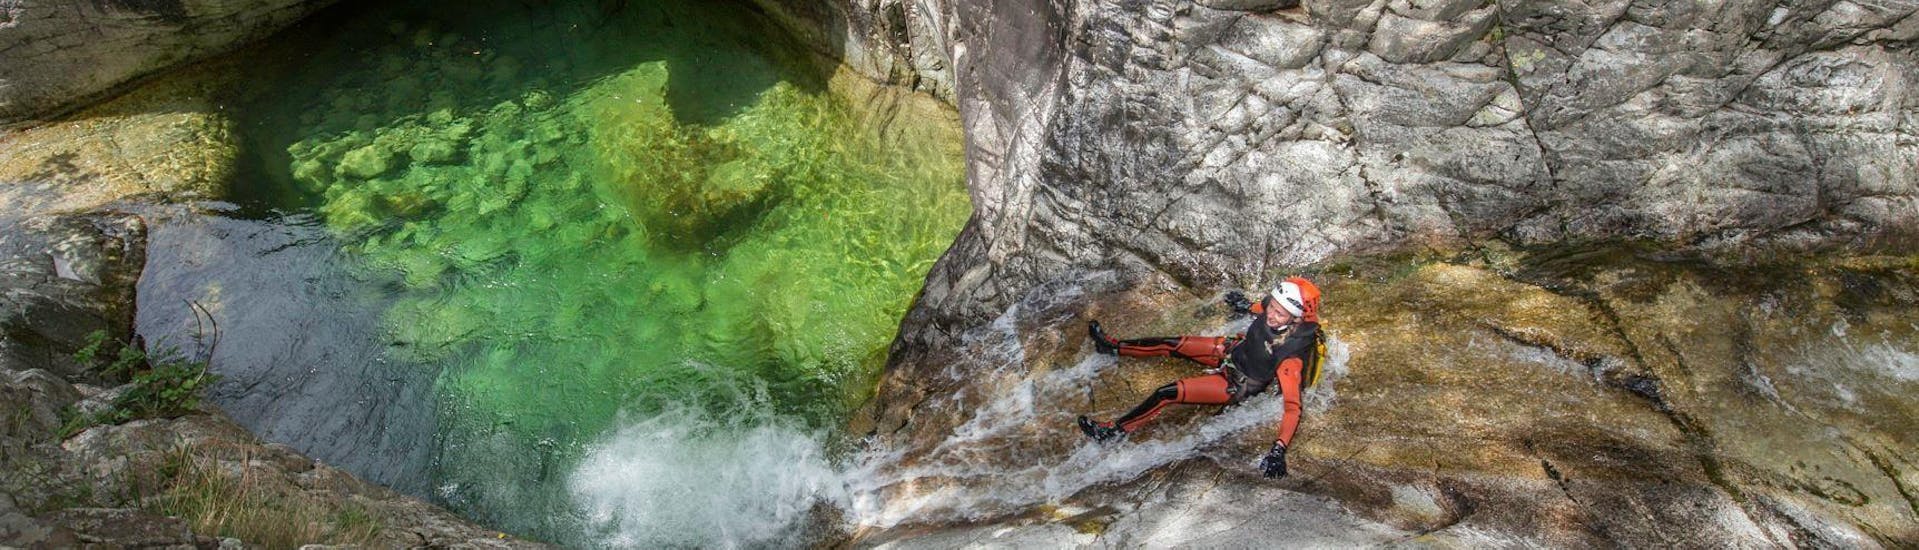 Une fille glisse dans le Canyon de Zoicu lors de l'activité Canyoning classique avec leur moniteur du Canyon Corse.